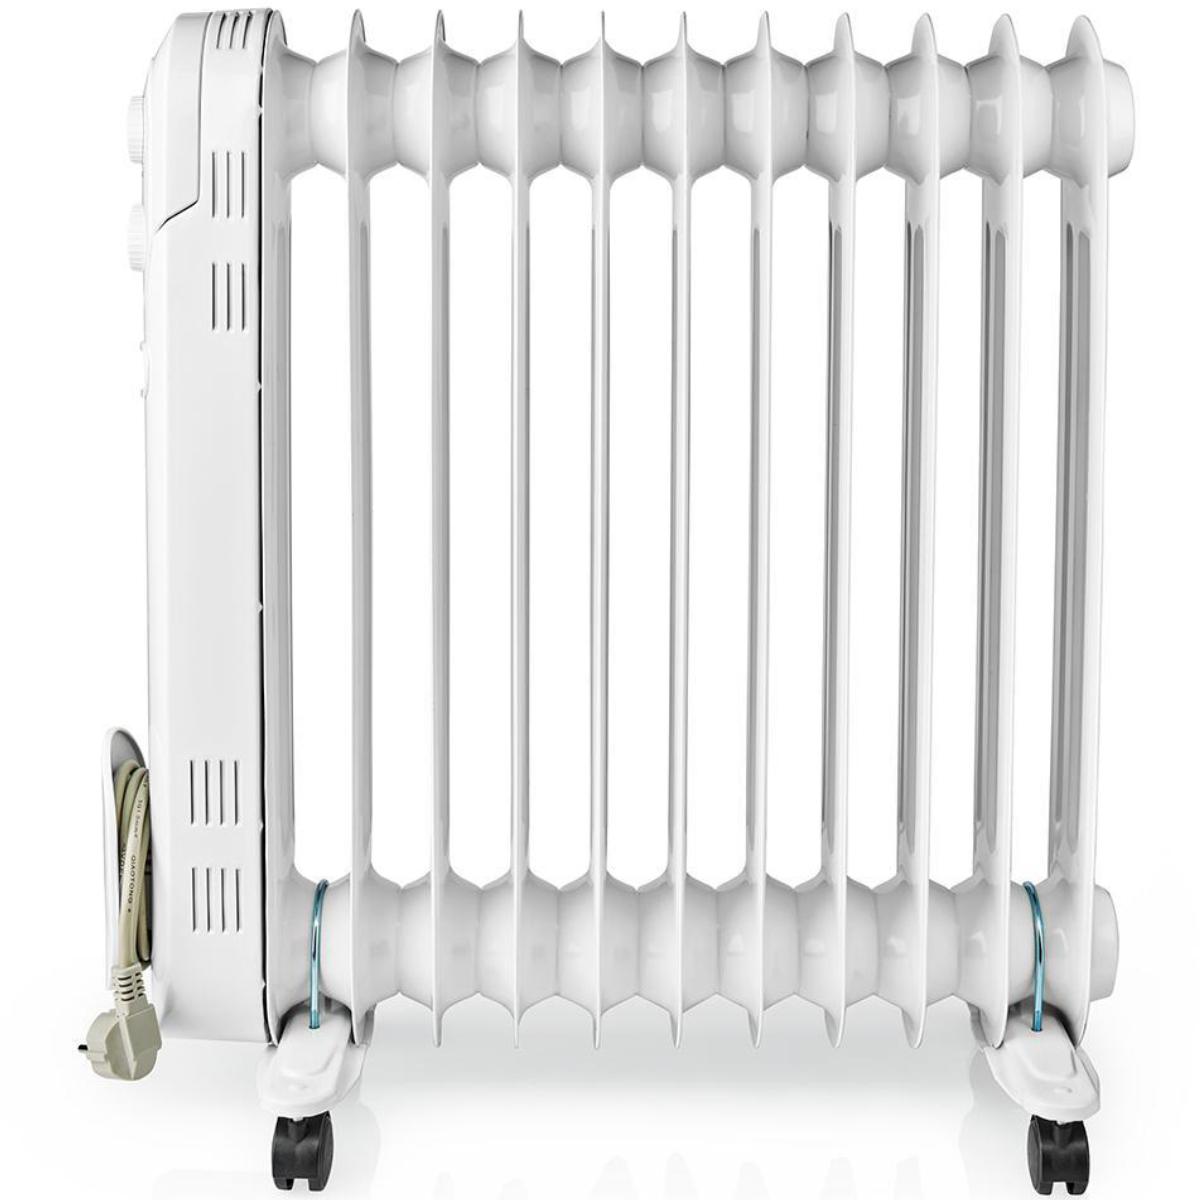 Tentakel komedie Executie Elektrische verwarming - Oliegevulde mobiele radiator die een aanvullende  en comfortabele warmtebron vormt die zowel stil als efficiënt is. De  radiator is voorzien van drie warmtestanden en een thermostaat om de  gewenste